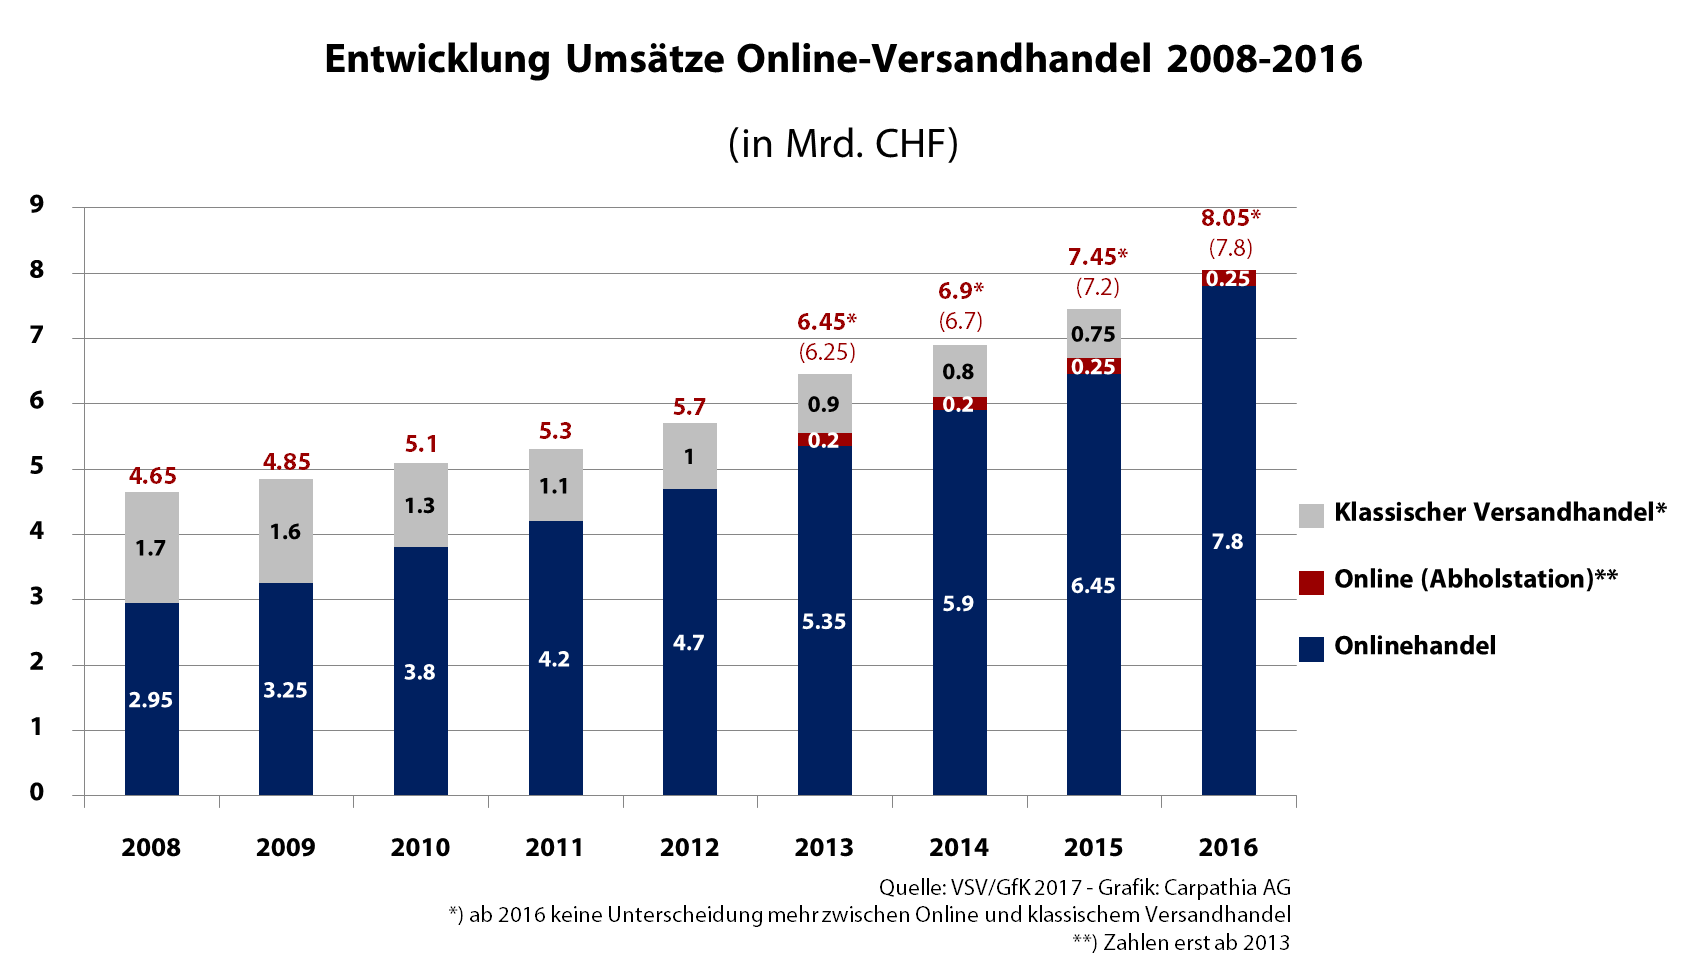 Umsatzentwicklung Online- und Versandhandel 2008-2016 - Quelle: VSV/GfK - Grafik. Carpathia